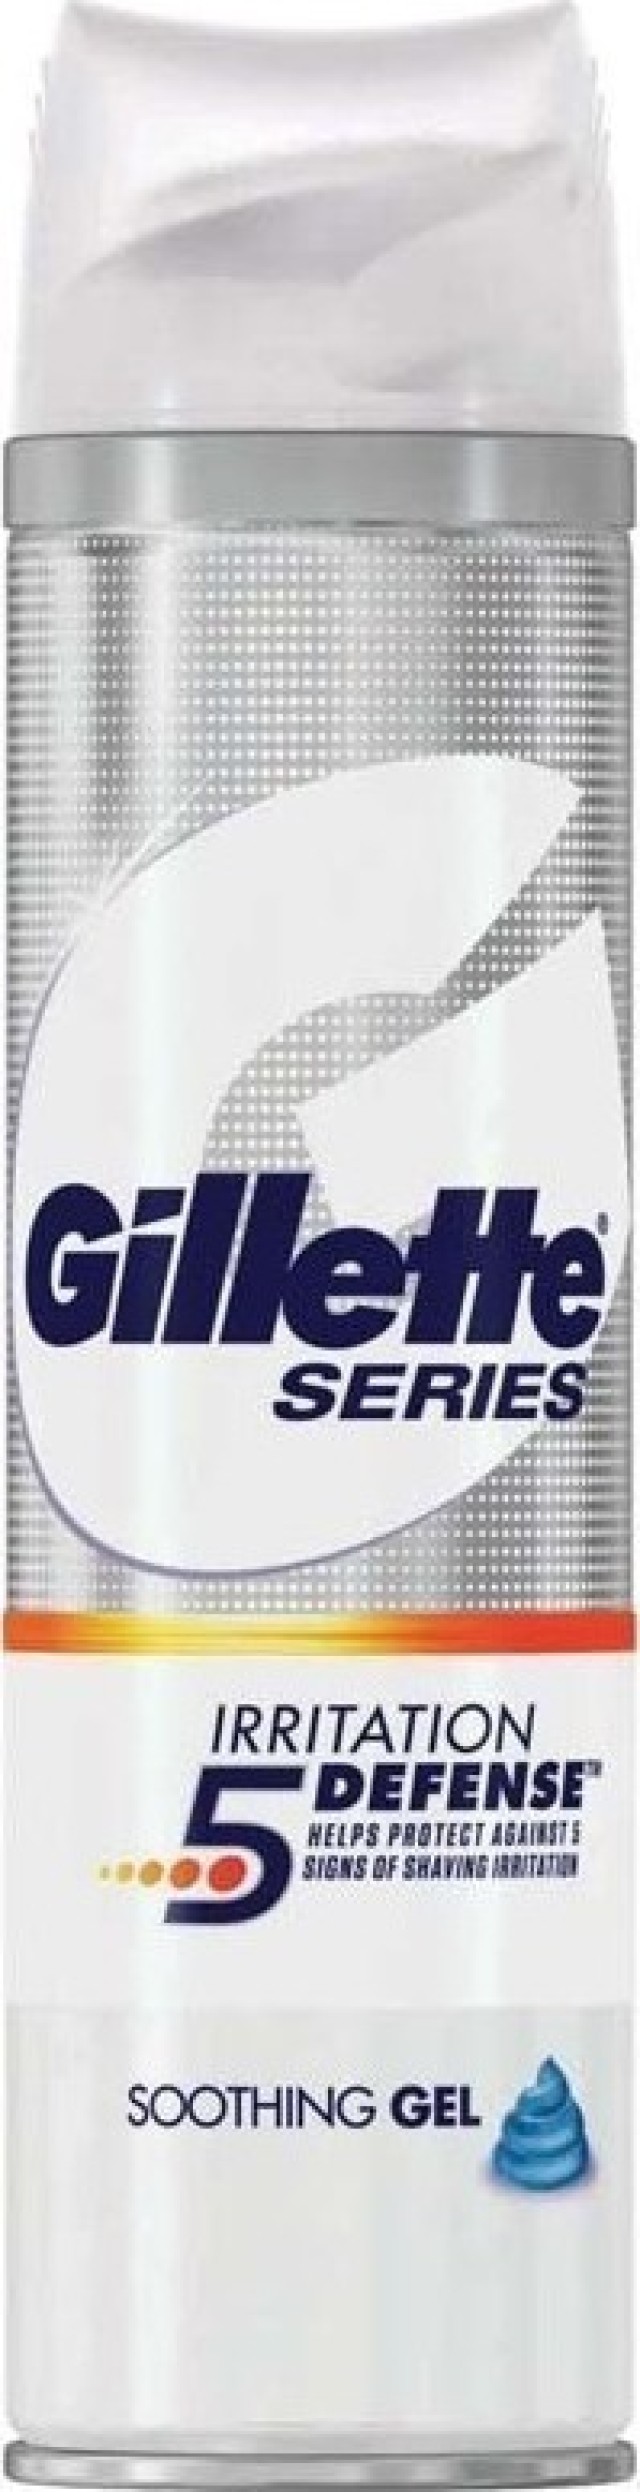 Gillette Series Irritation 5 Defense Soothing Gel Τζελ Ξυρίσματος 200ml